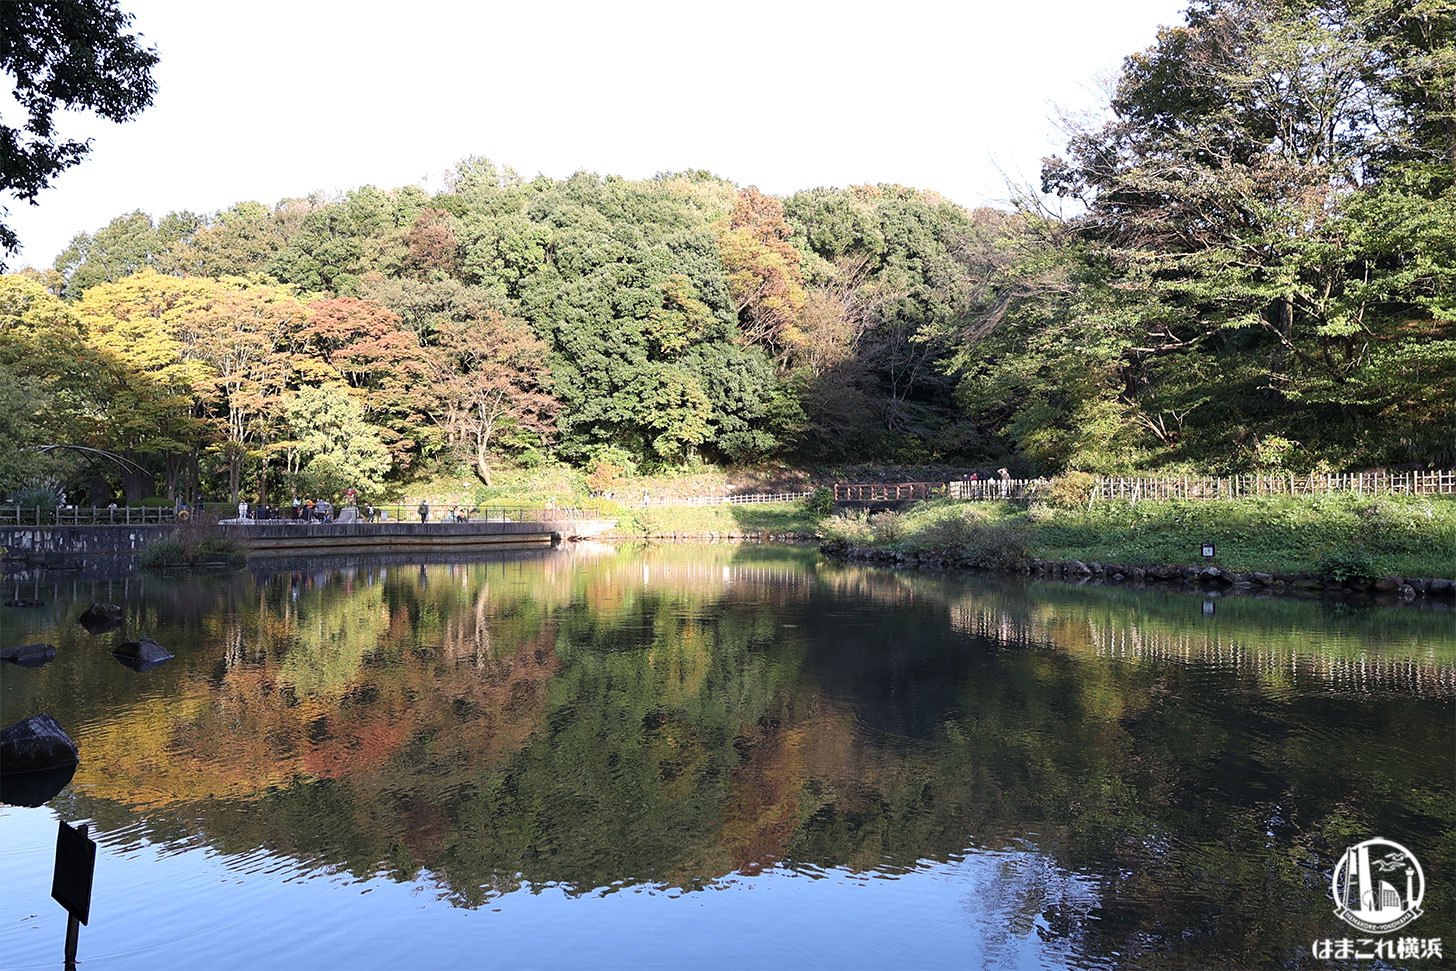 四季の森公園は森や水辺に季節を感じる雄大な自然スポット！横浜・ズーラシア近く